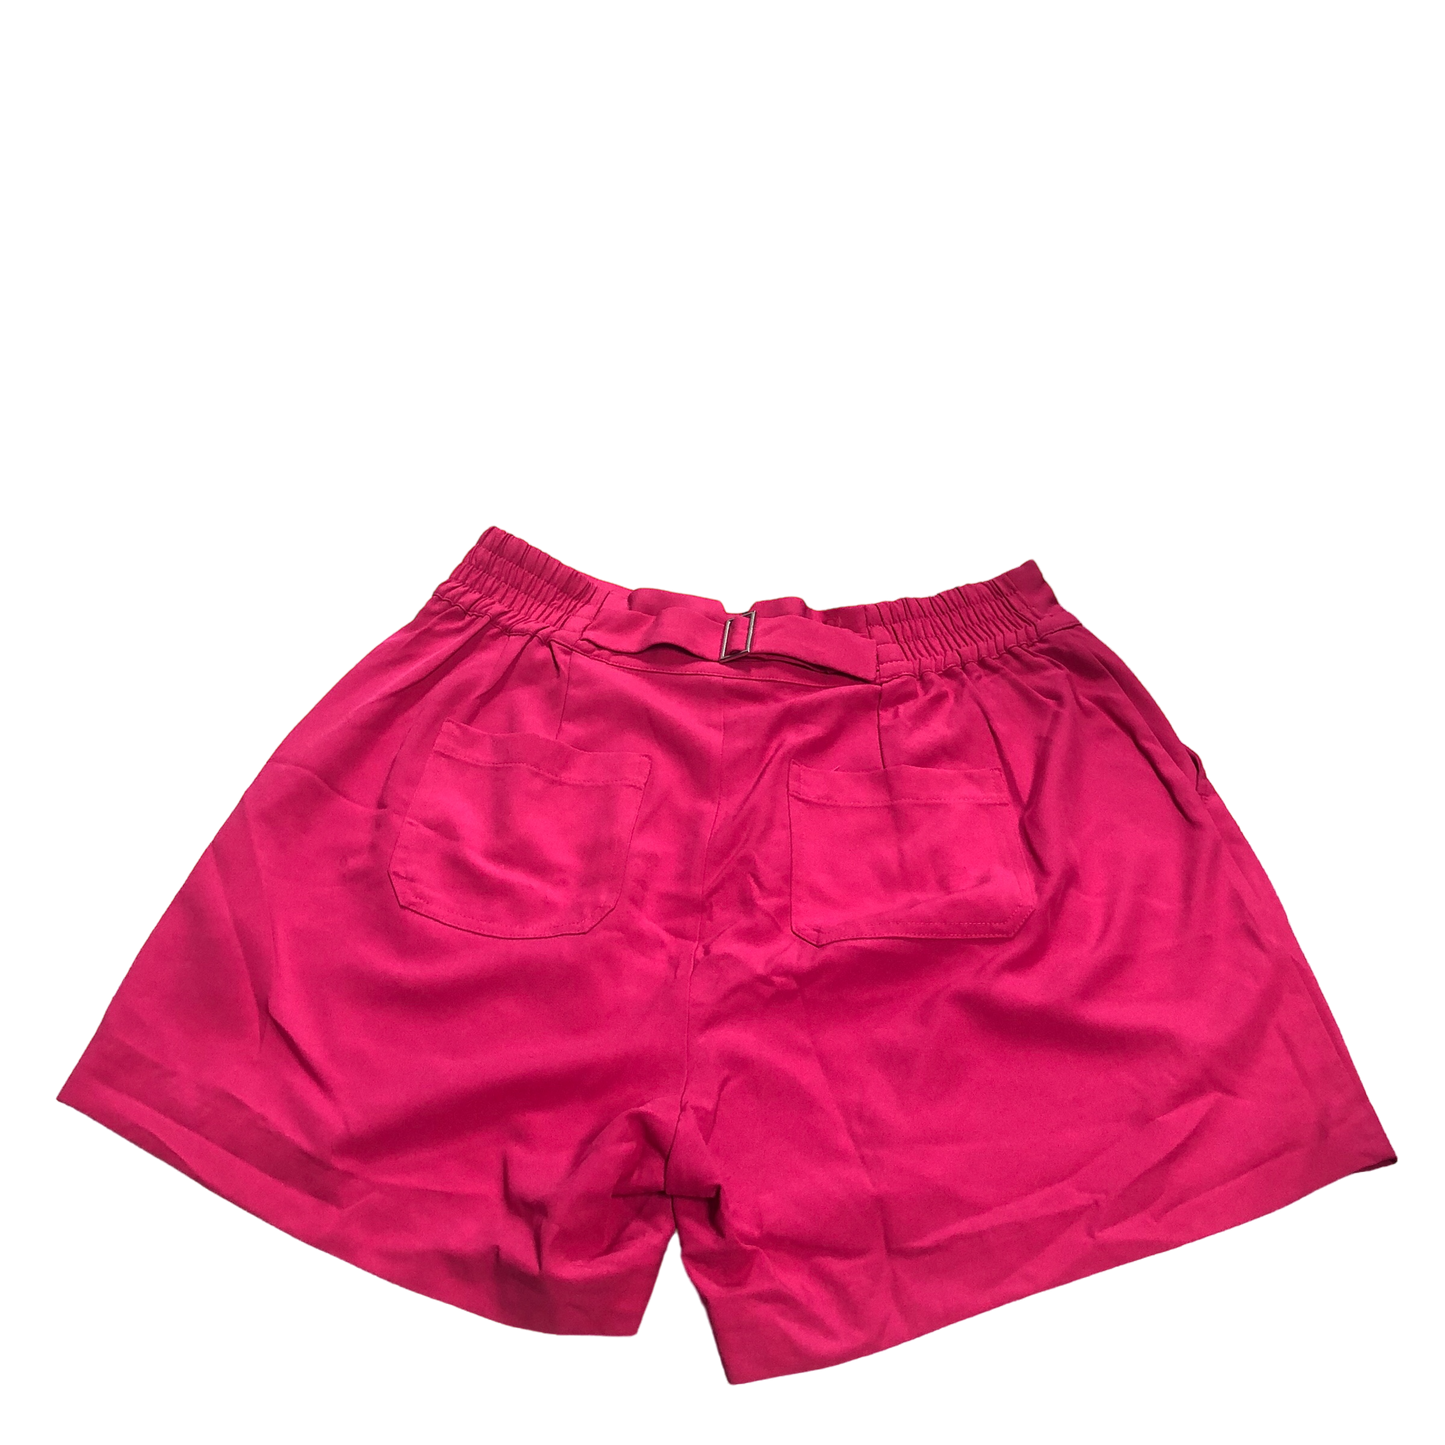 Pink Shorts Torrid, Size 10